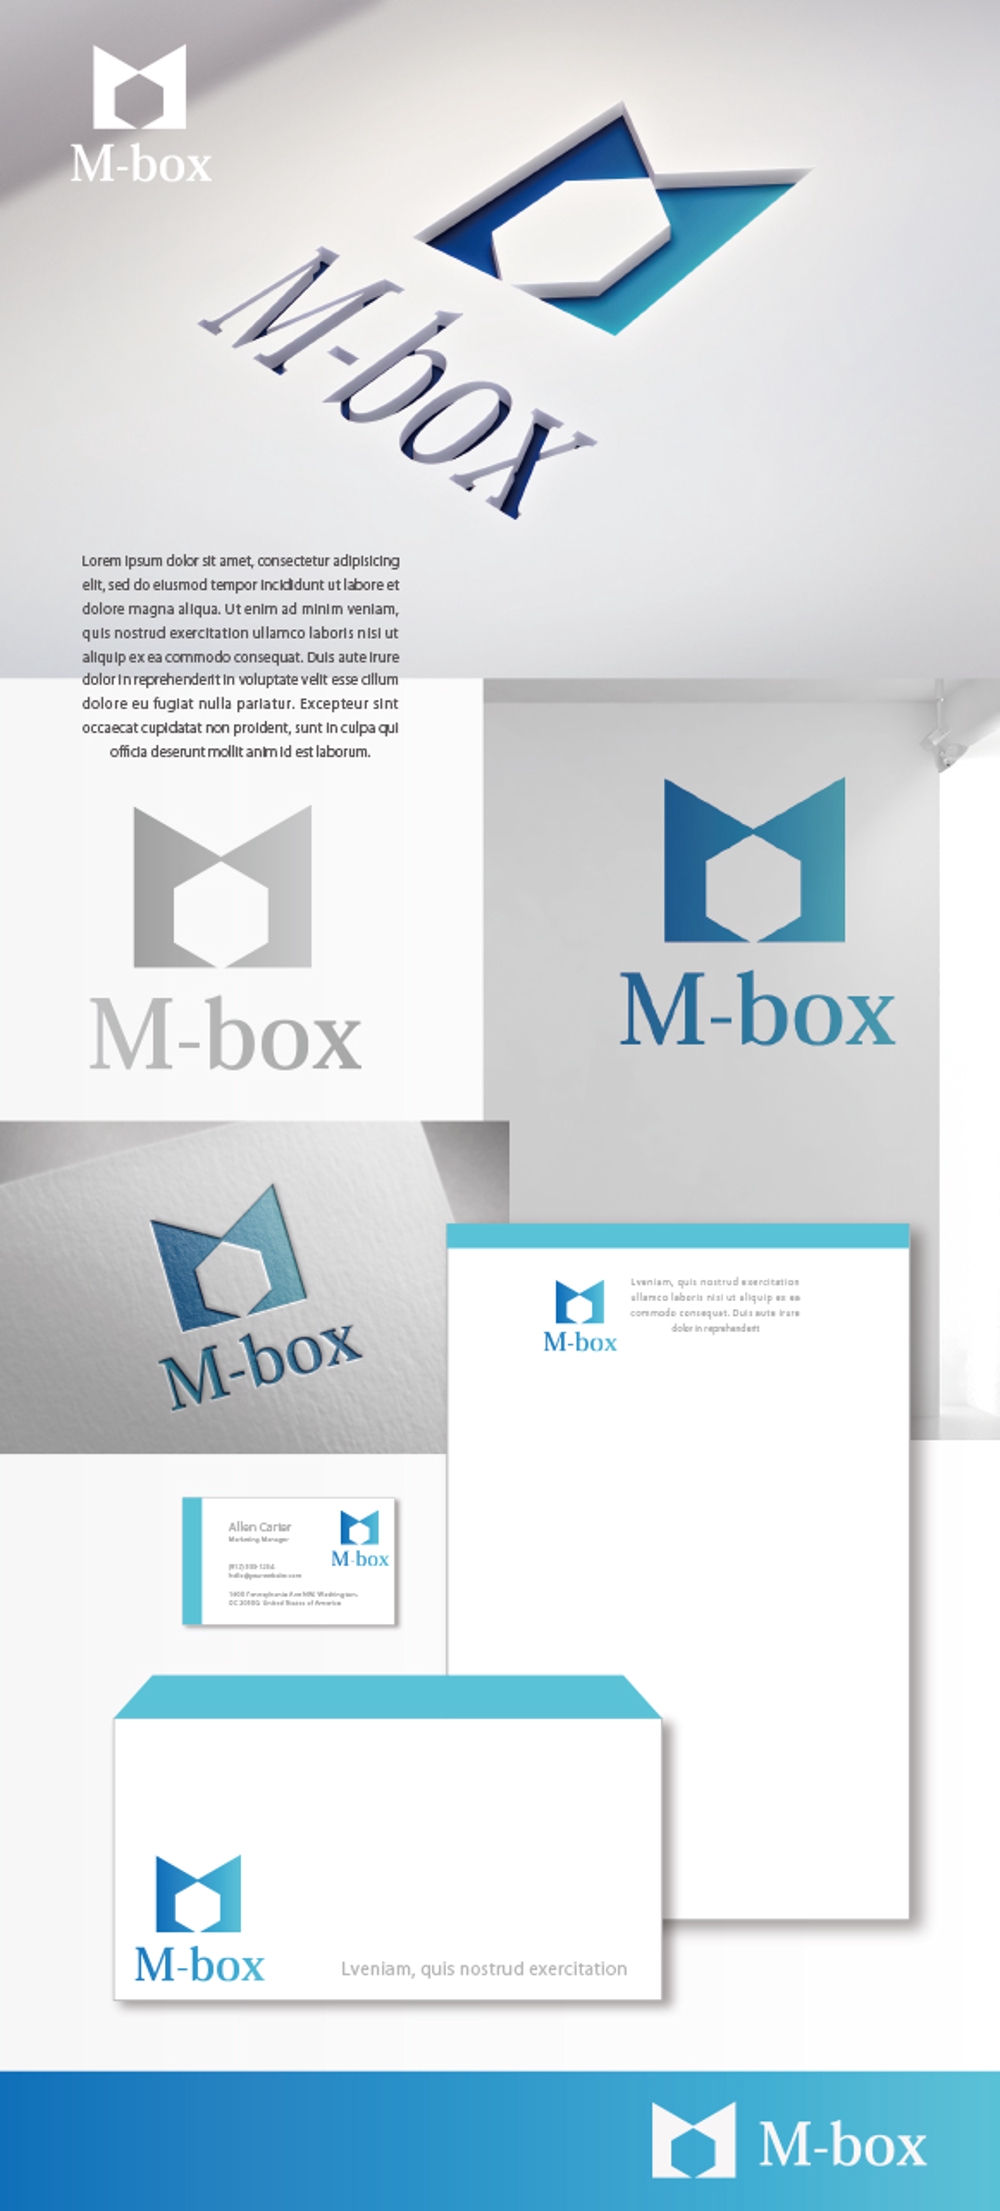 M-box_02.jpg